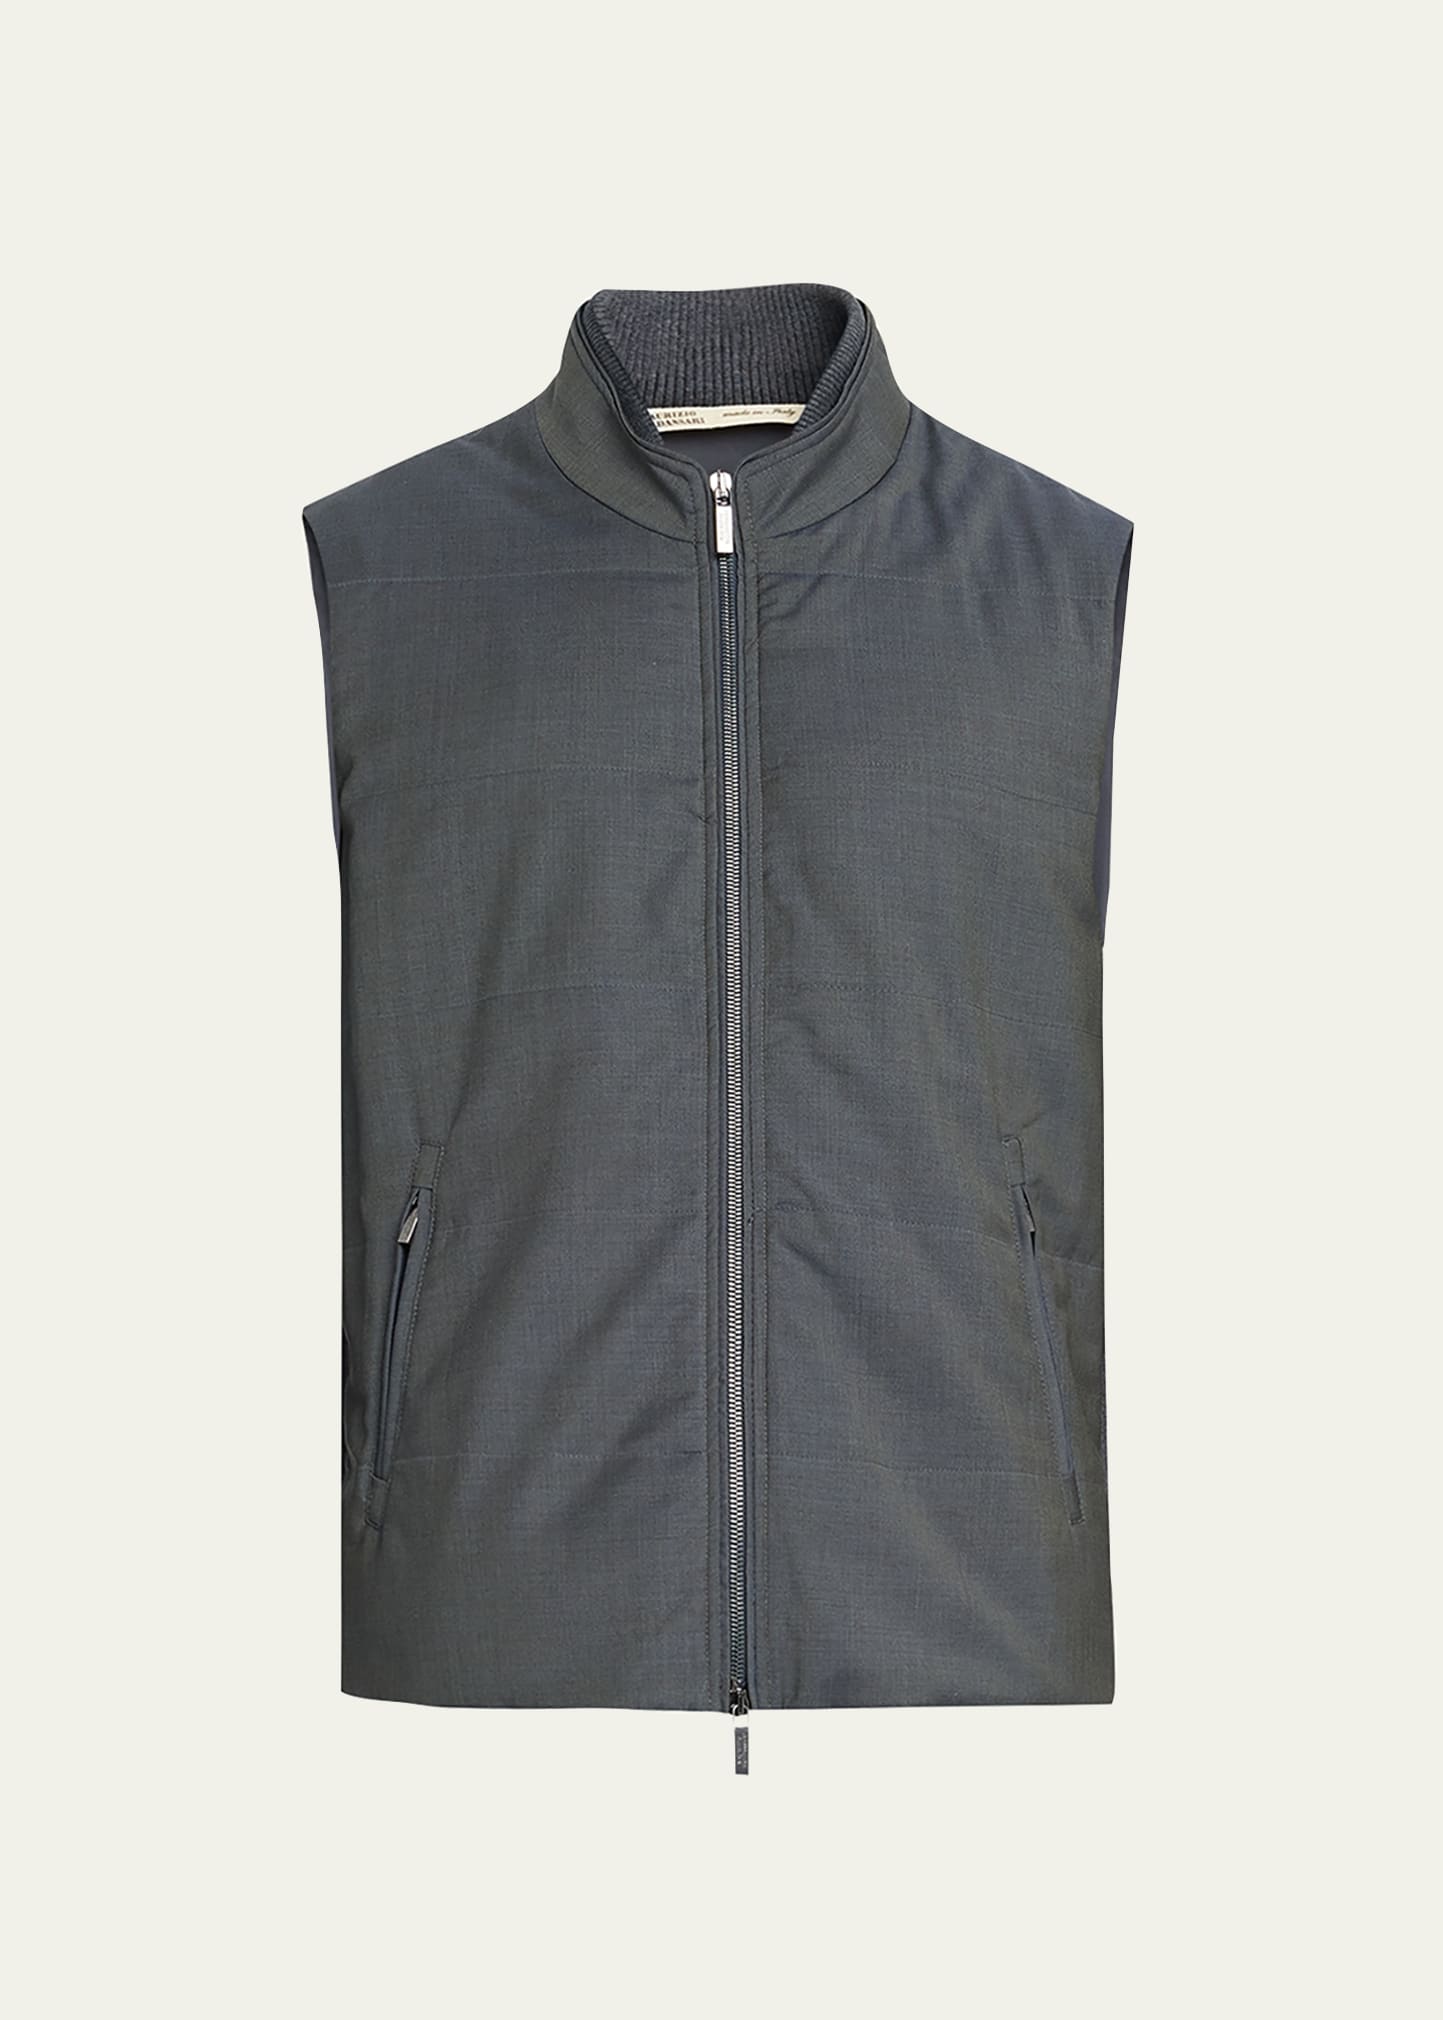 Baldassari Men's Full-Zip Vest